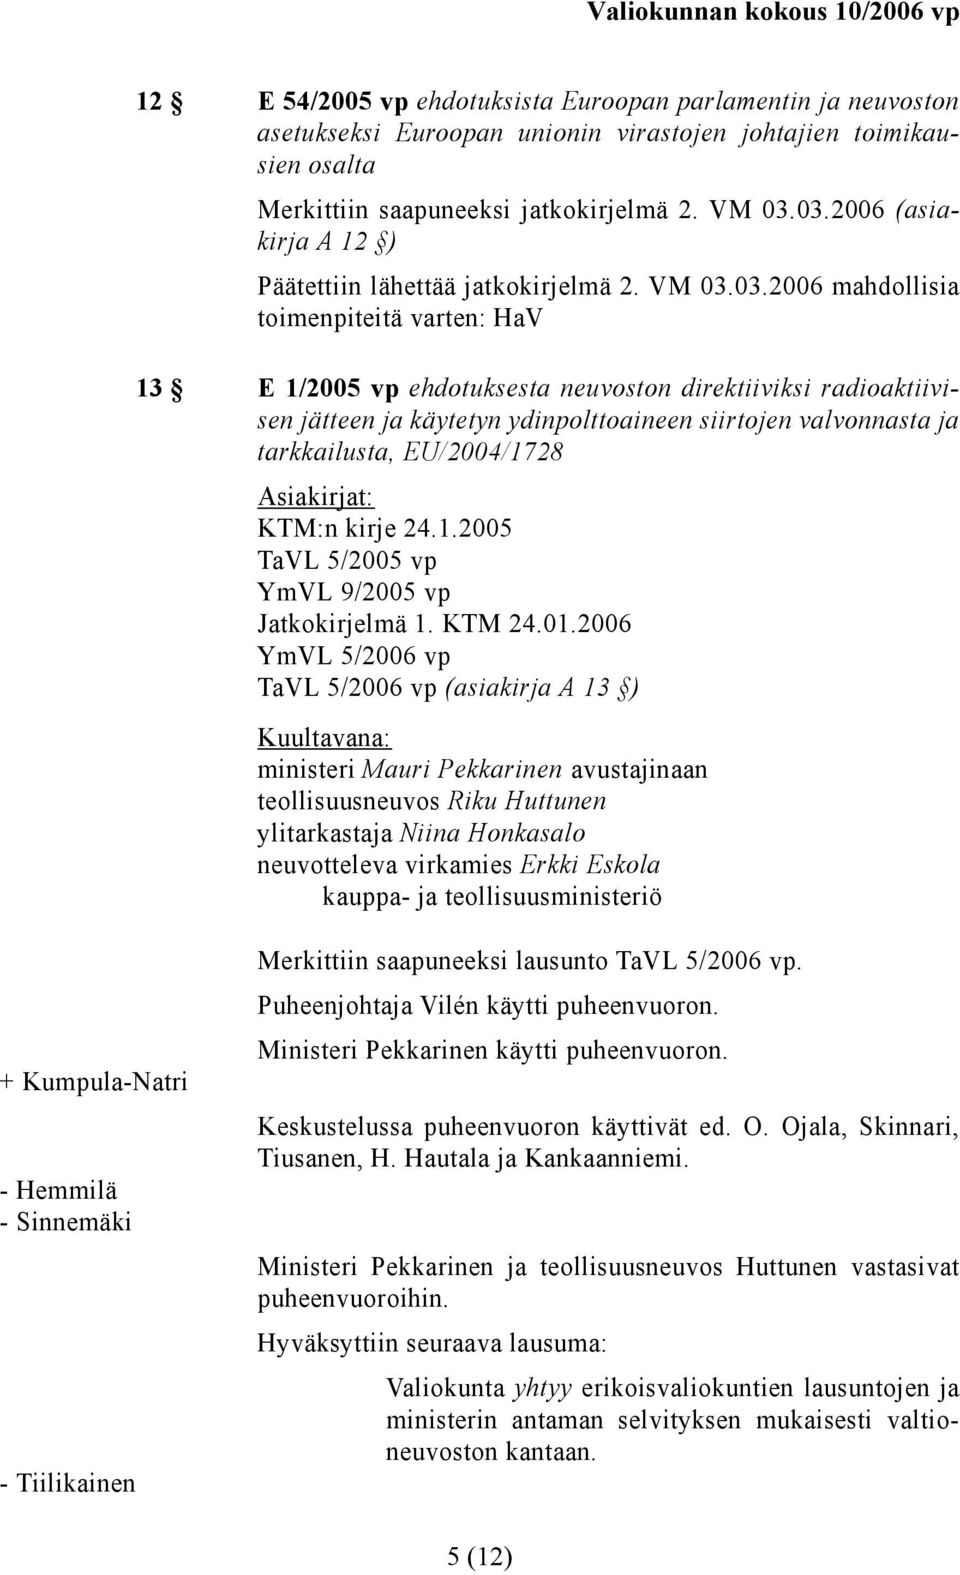 käytetyn ydinpolttoaineen siirtojen valvonnasta ja tarkkailusta, EU/2004/1728 KTM:n kirje 24.1.2005 TaVL 5/2005 vp YmVL 9/2005 vp Jatkokirjelmä 1. KTM 24.01.